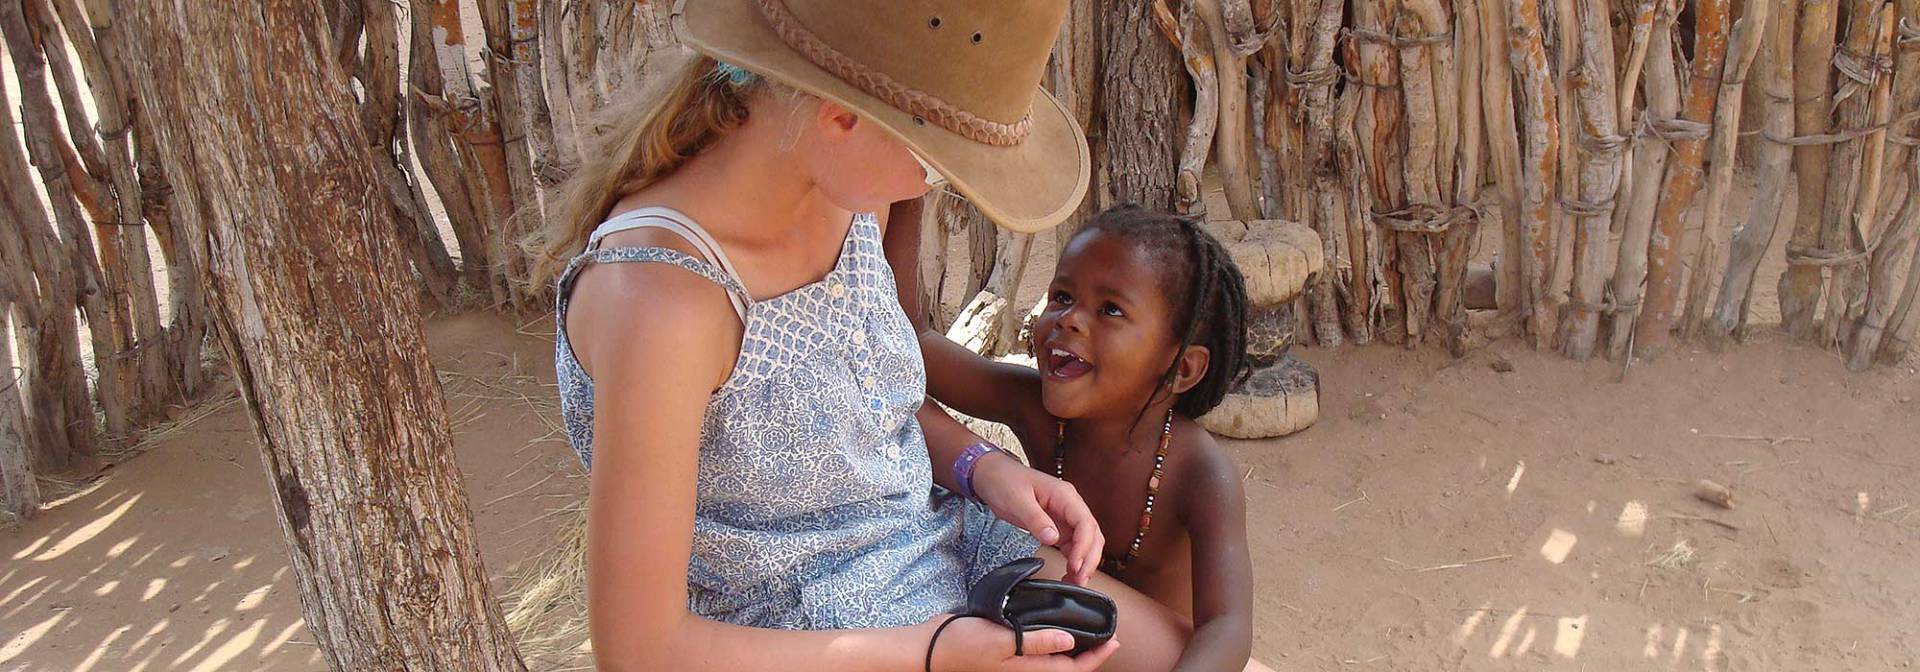 Familienfreundliches Kulturprojekt in Namibia